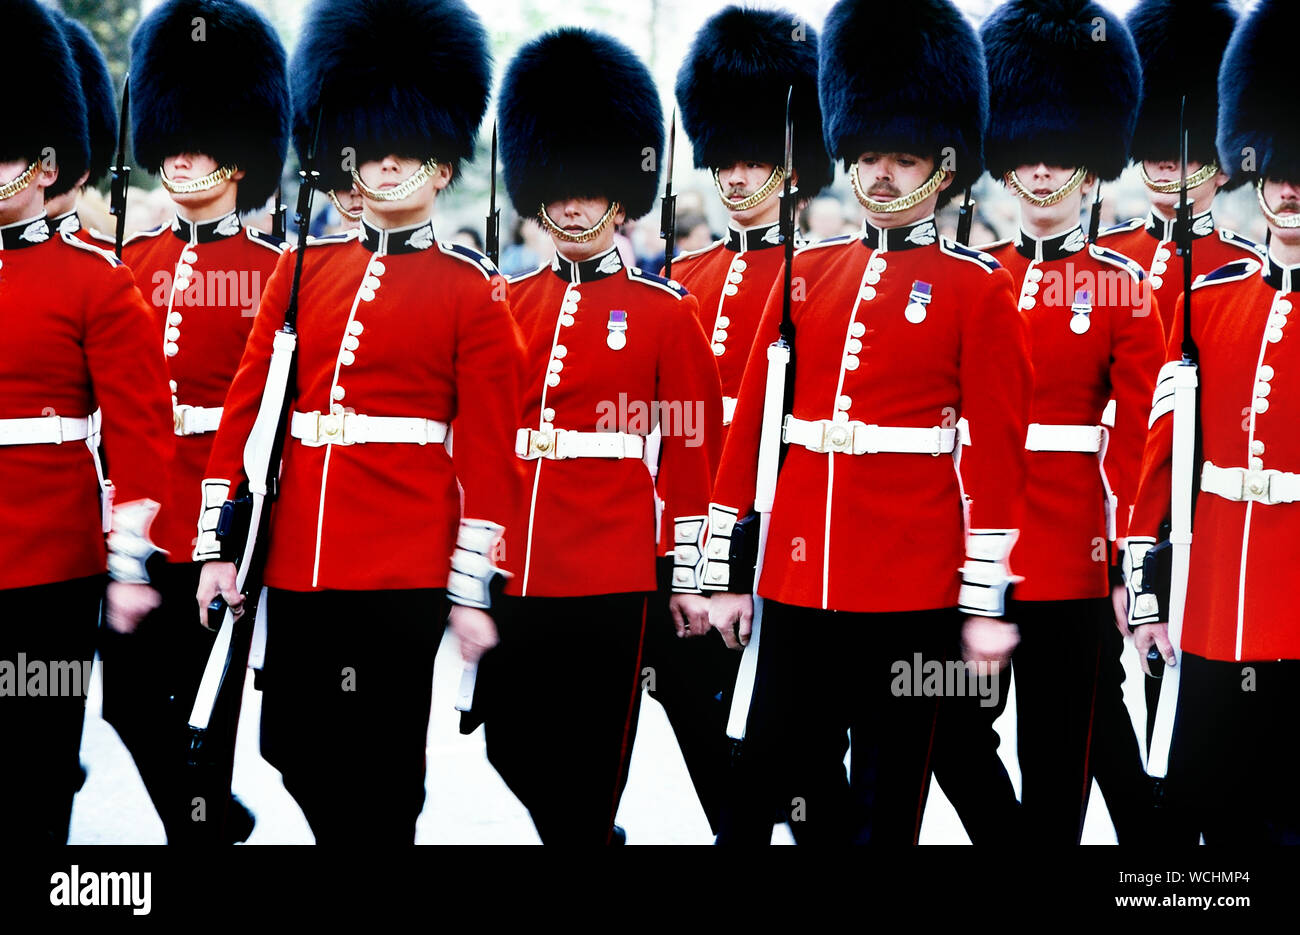 Garde-raclettes en marching. Relève de la garde à Buckingham Palace, Londres, Angleterre, Royaume-Uni. Vers les années 1980 Banque D'Images